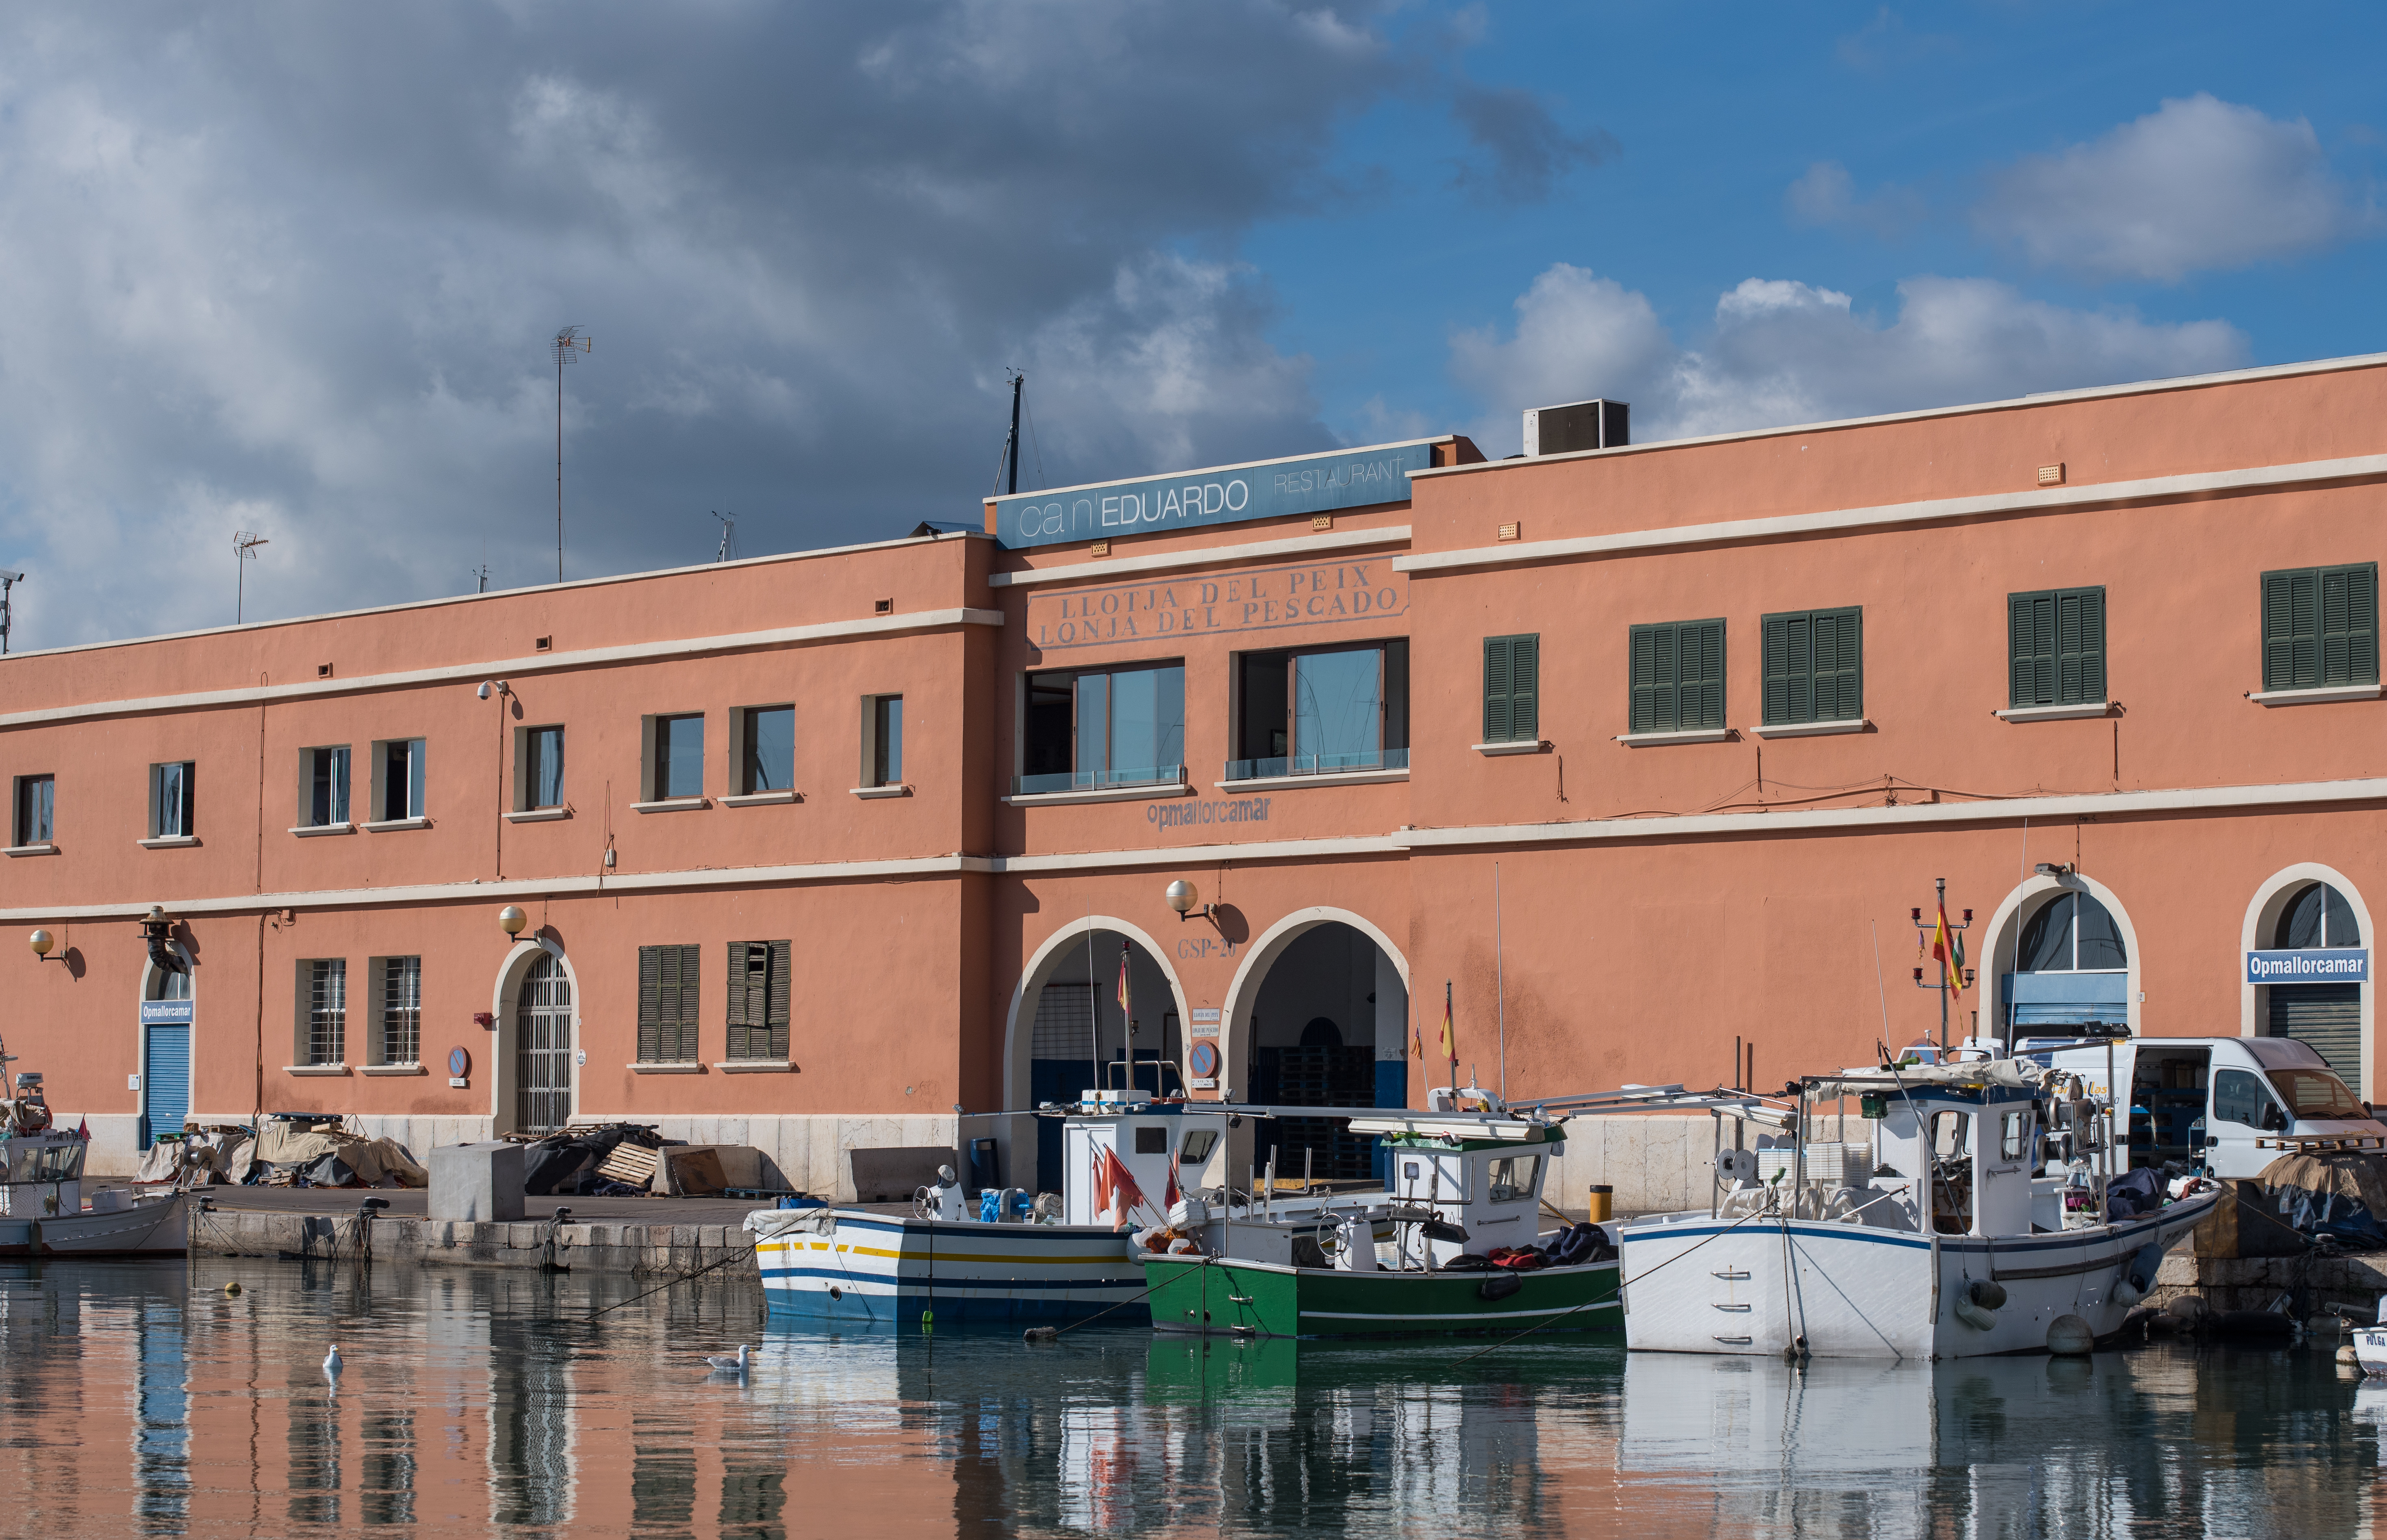 La APB saca a concurso público la explotación comercial de la lonja de pescado del Contramuelle-Mollet del puerto de Palma